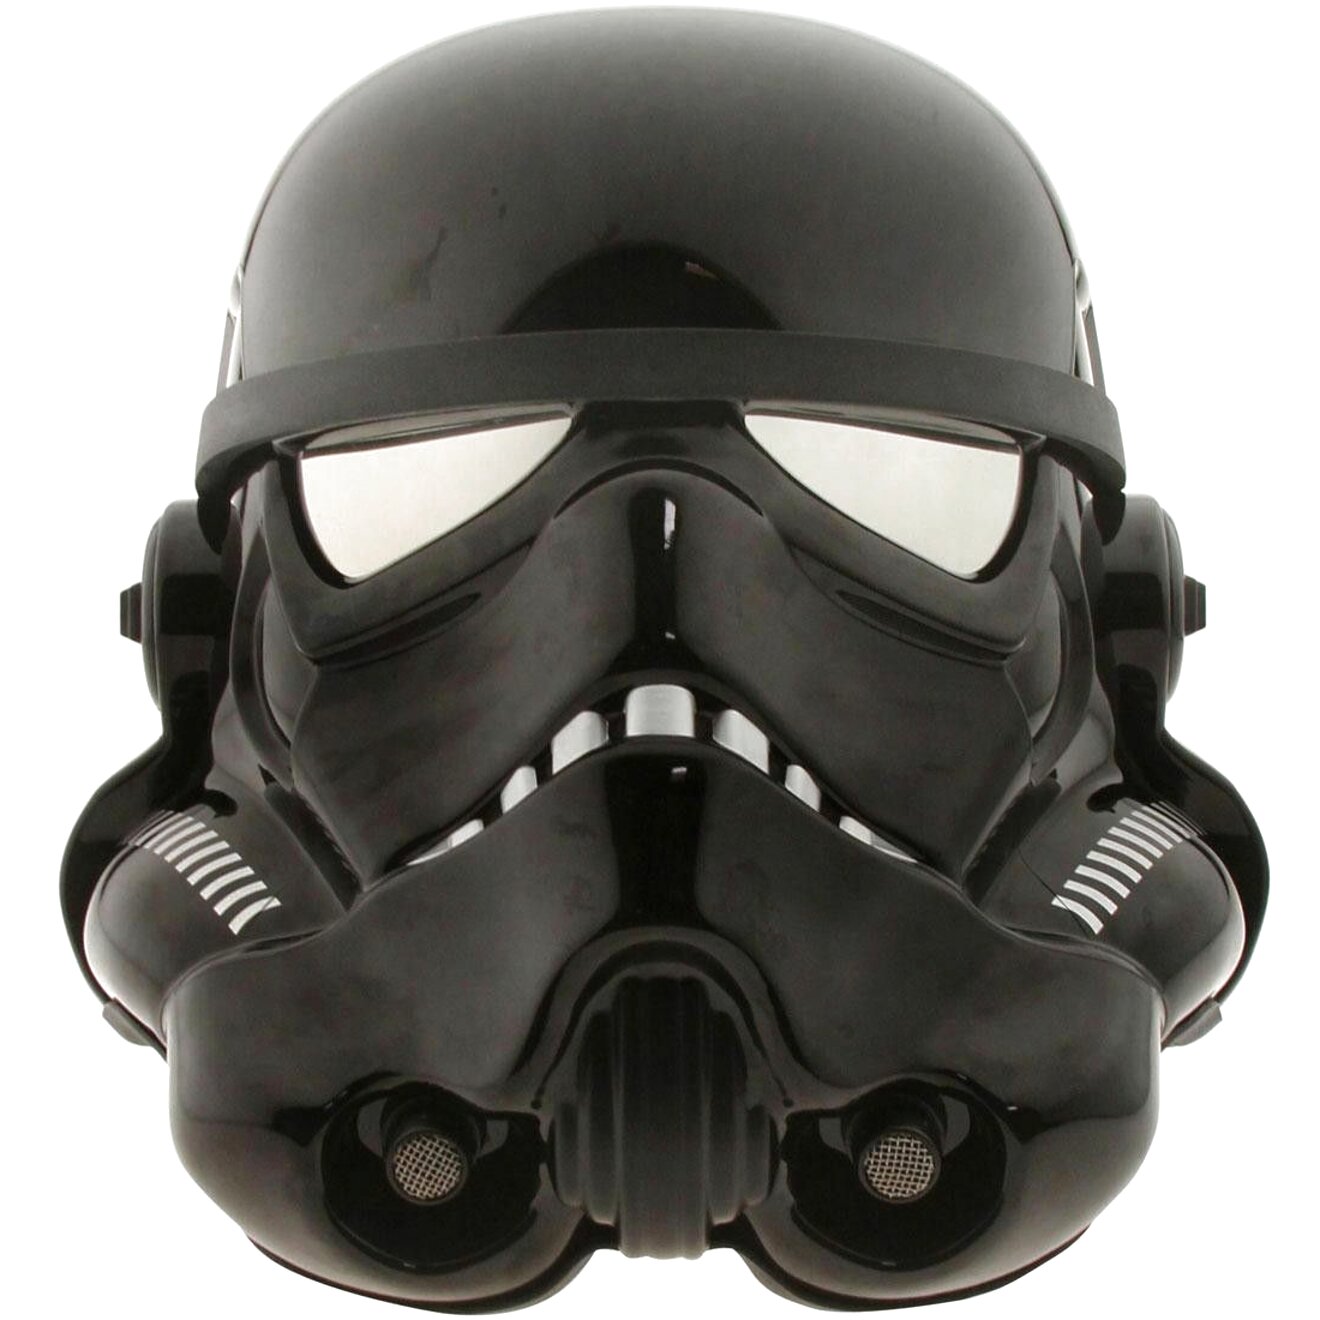 Black Stormtrooper Helmet for sale in UK | 55 used Black Stormtrooper